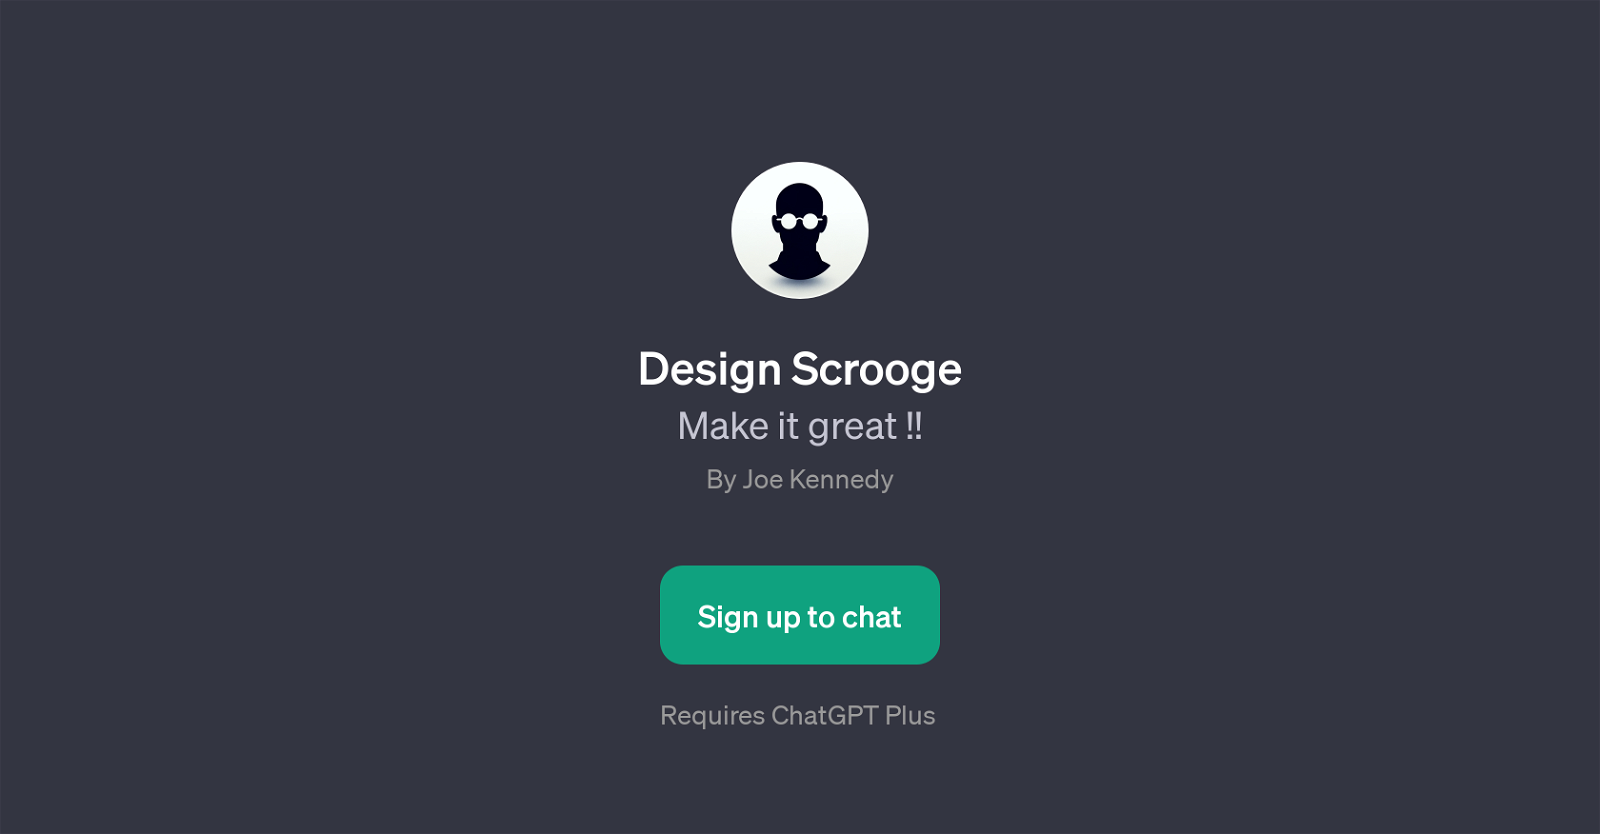 Design Scrooge website